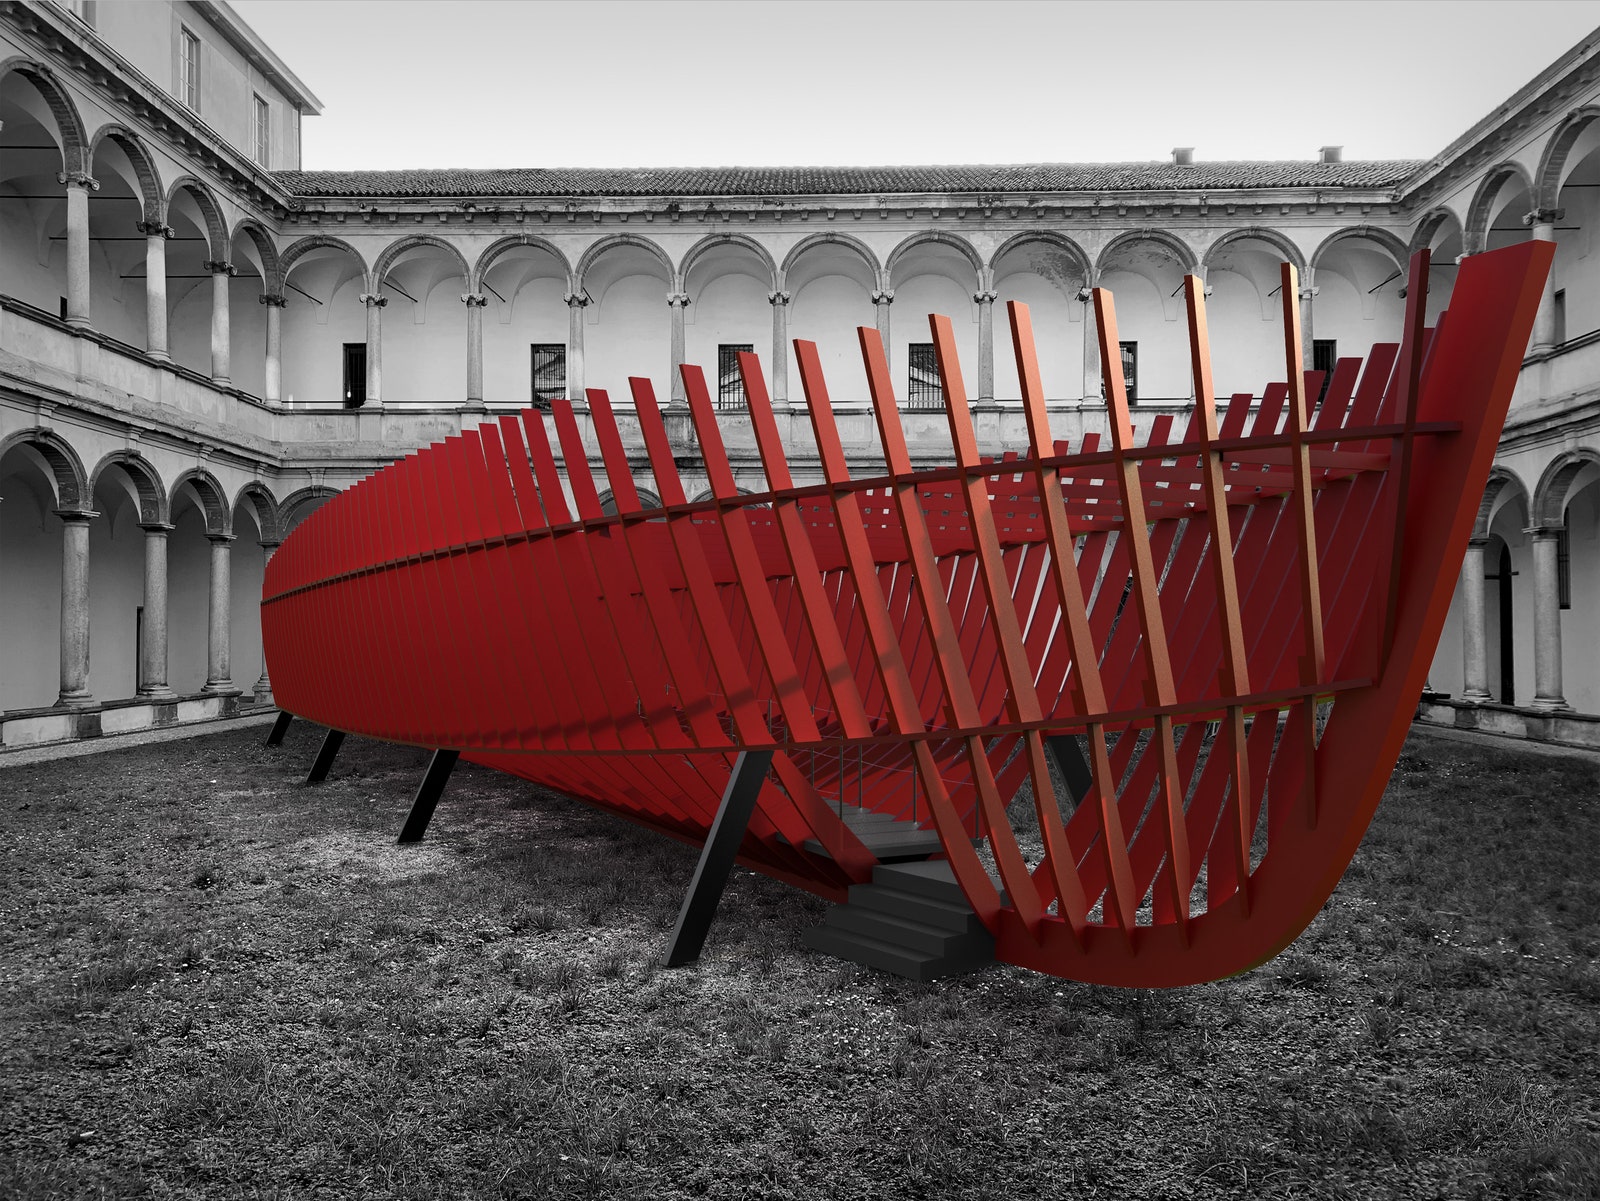 Инсталляция на Миланской неделе дизайна 2019 от Sanlorenzo